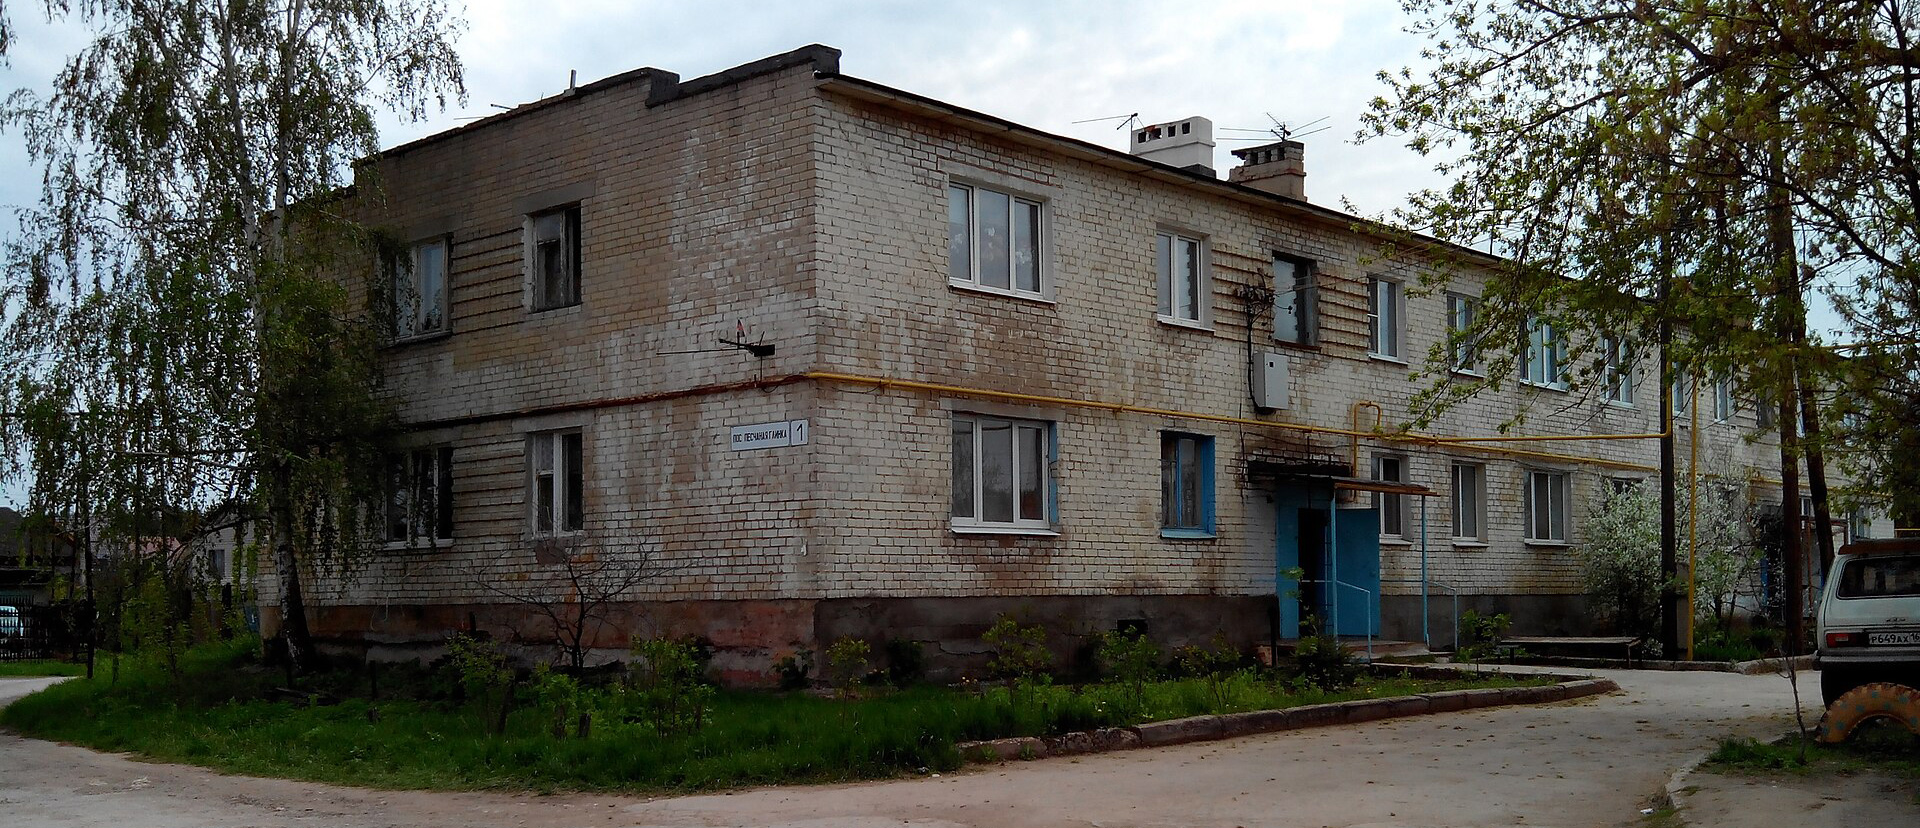 Das einzige mehrstöckige Wohnhaus in Peschanaya Glinka